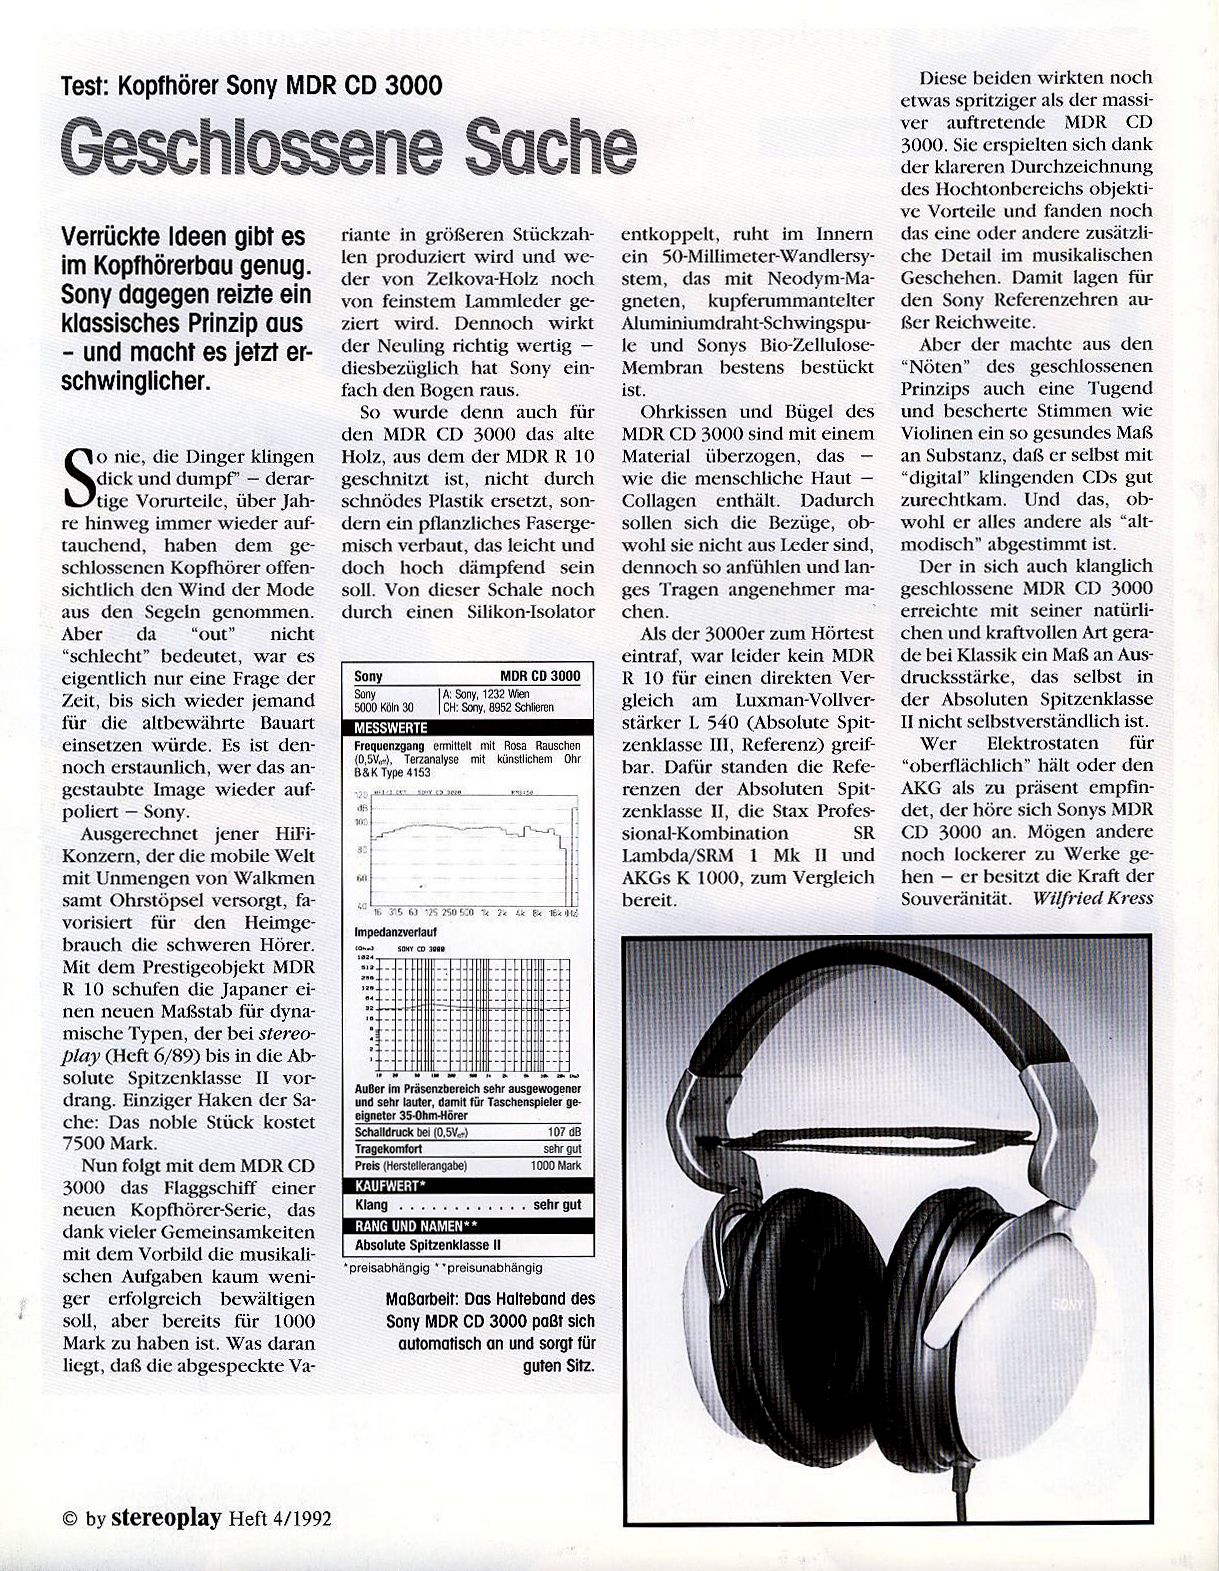 Sony MDR-CD 3000-Prospekt-1992.jpg